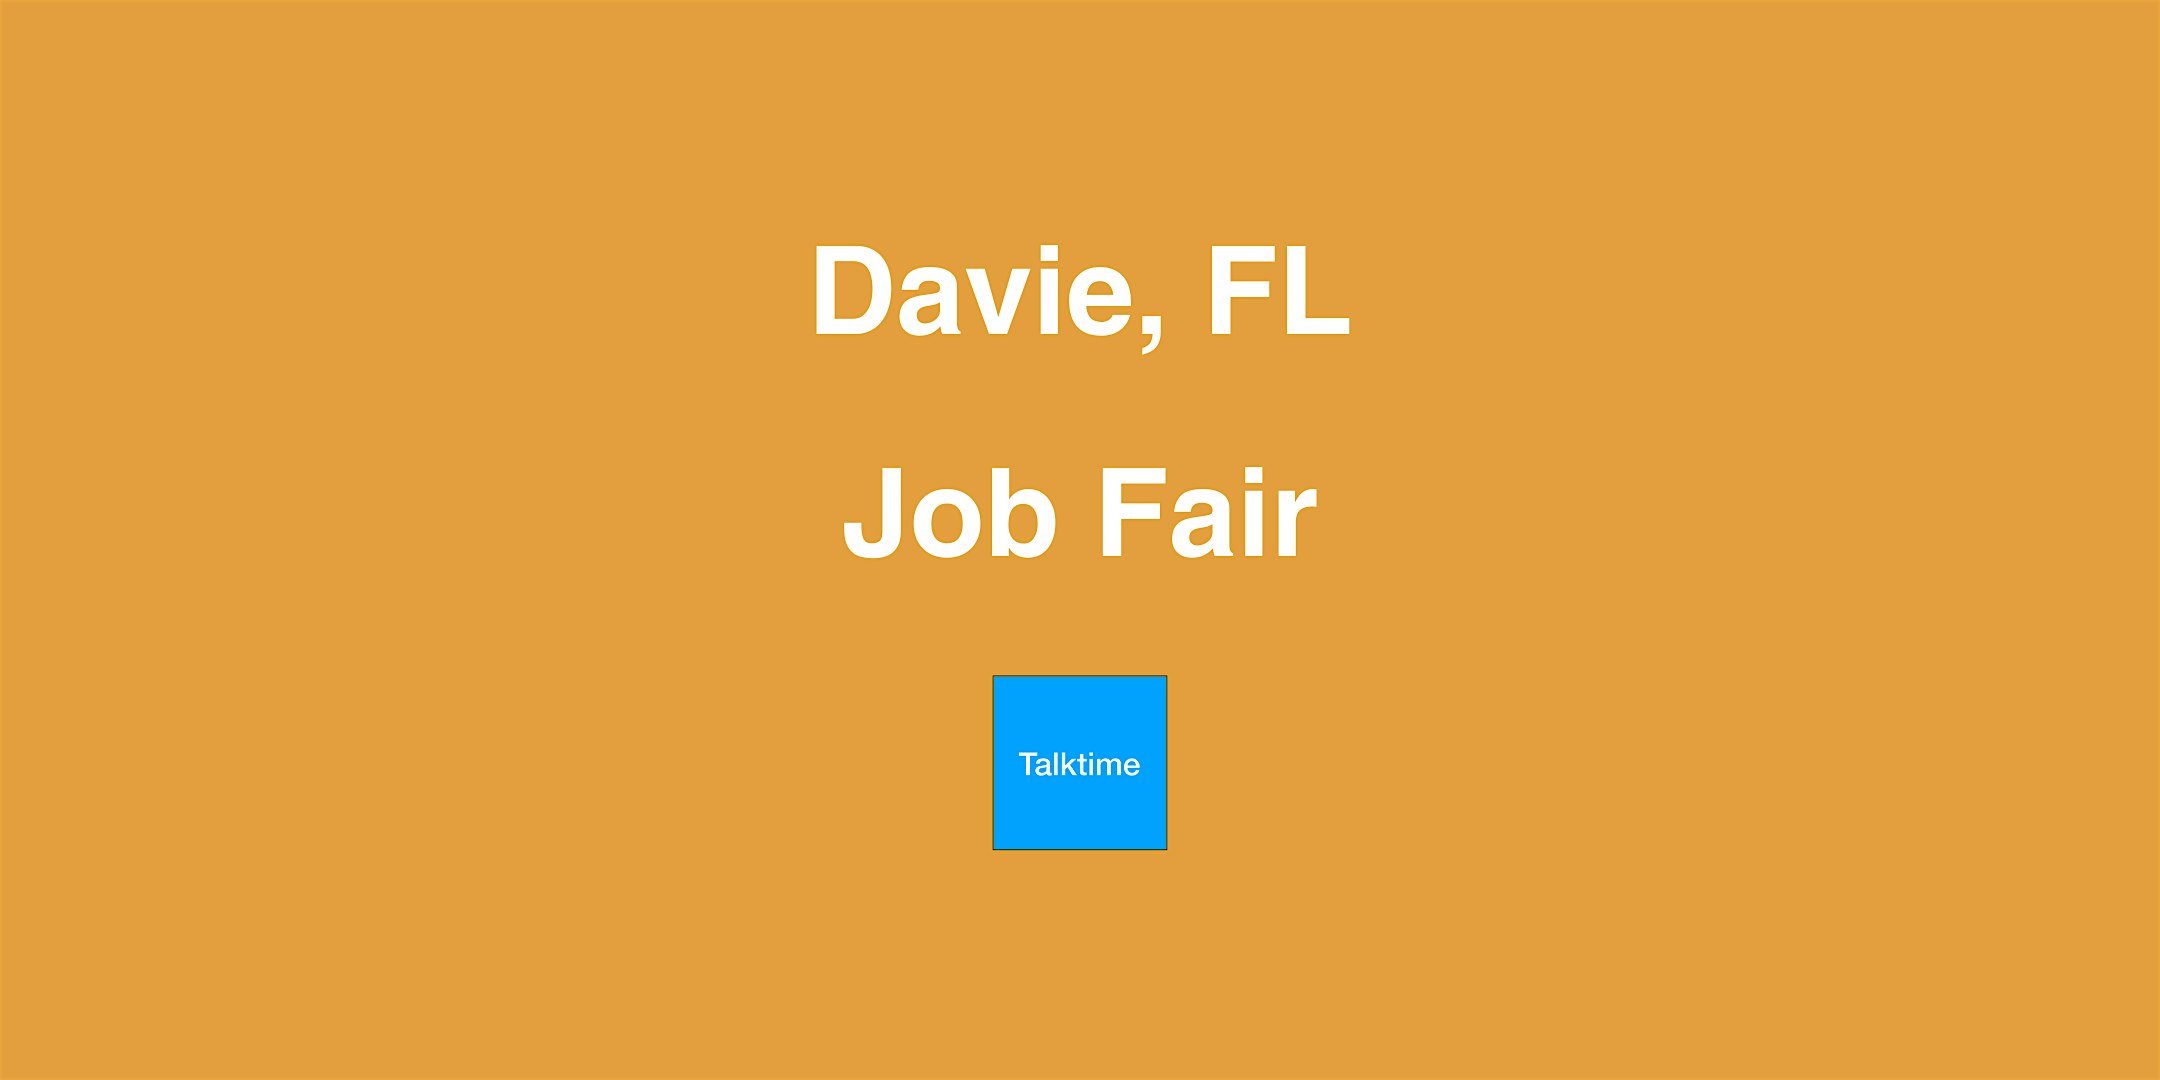 Job Fair - Davie